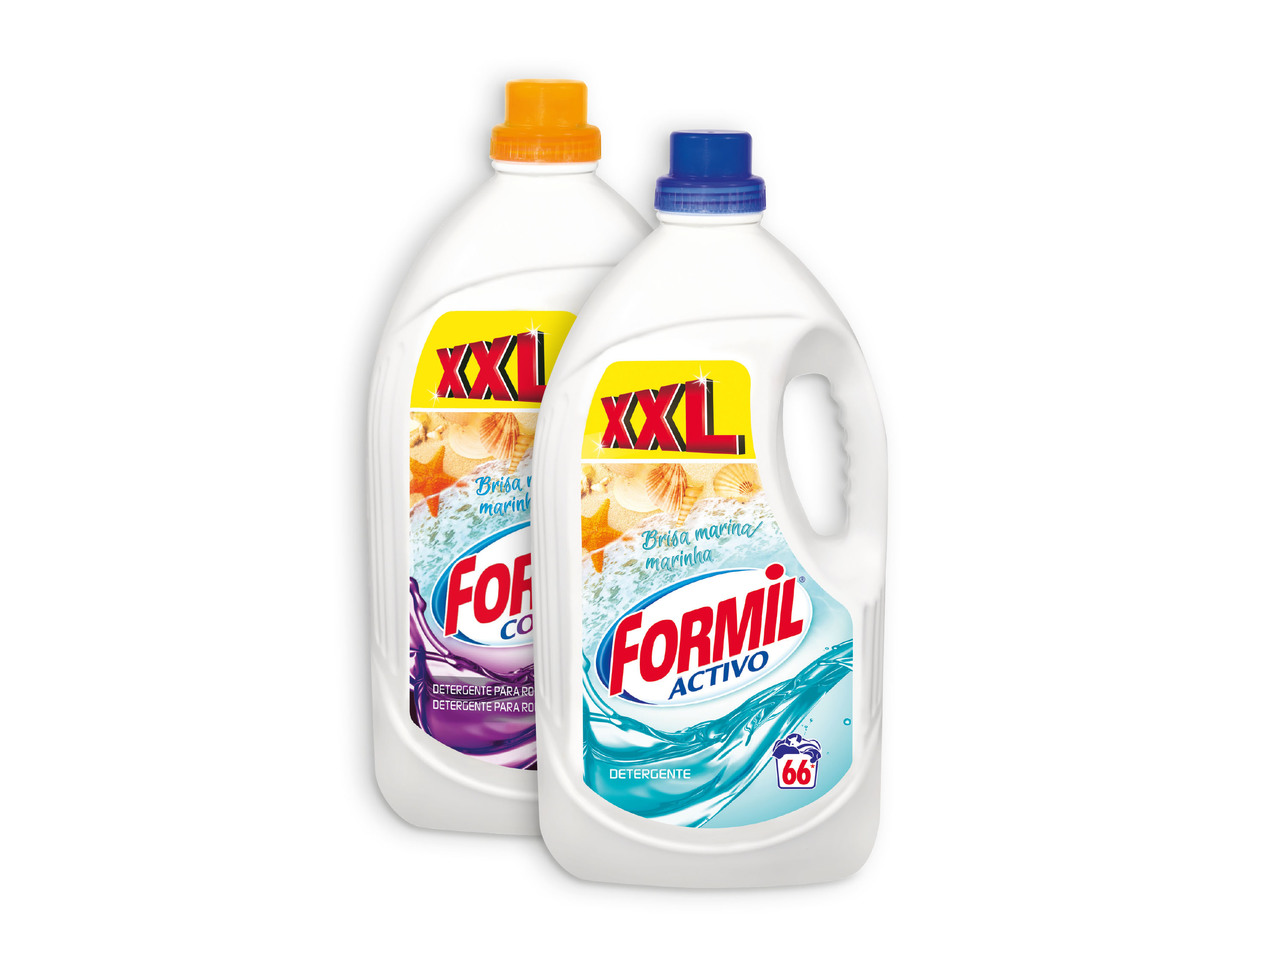 FORMIL(R) Detergente Líquido